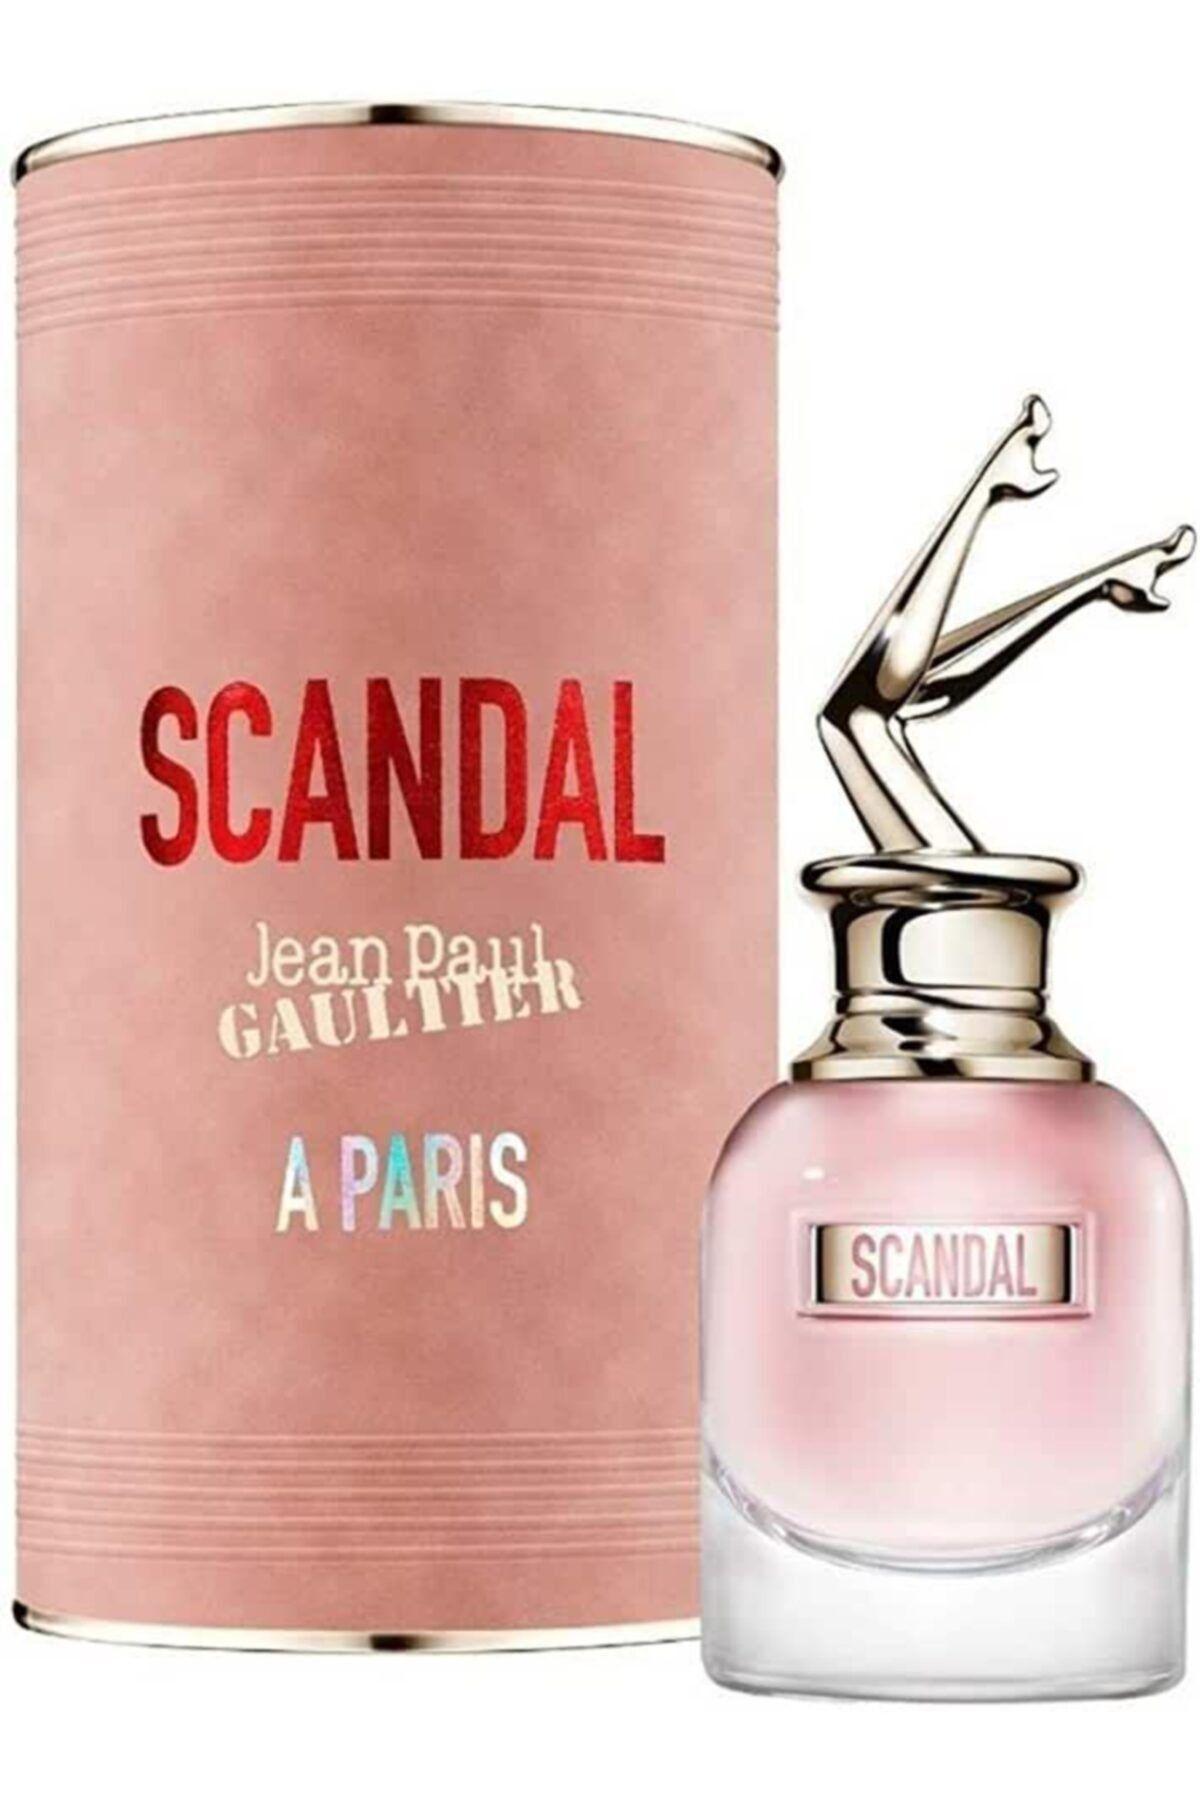 Jean Paul Gaultier Scandal A Paris EDT W 80ml Boxed (Rare Selection)